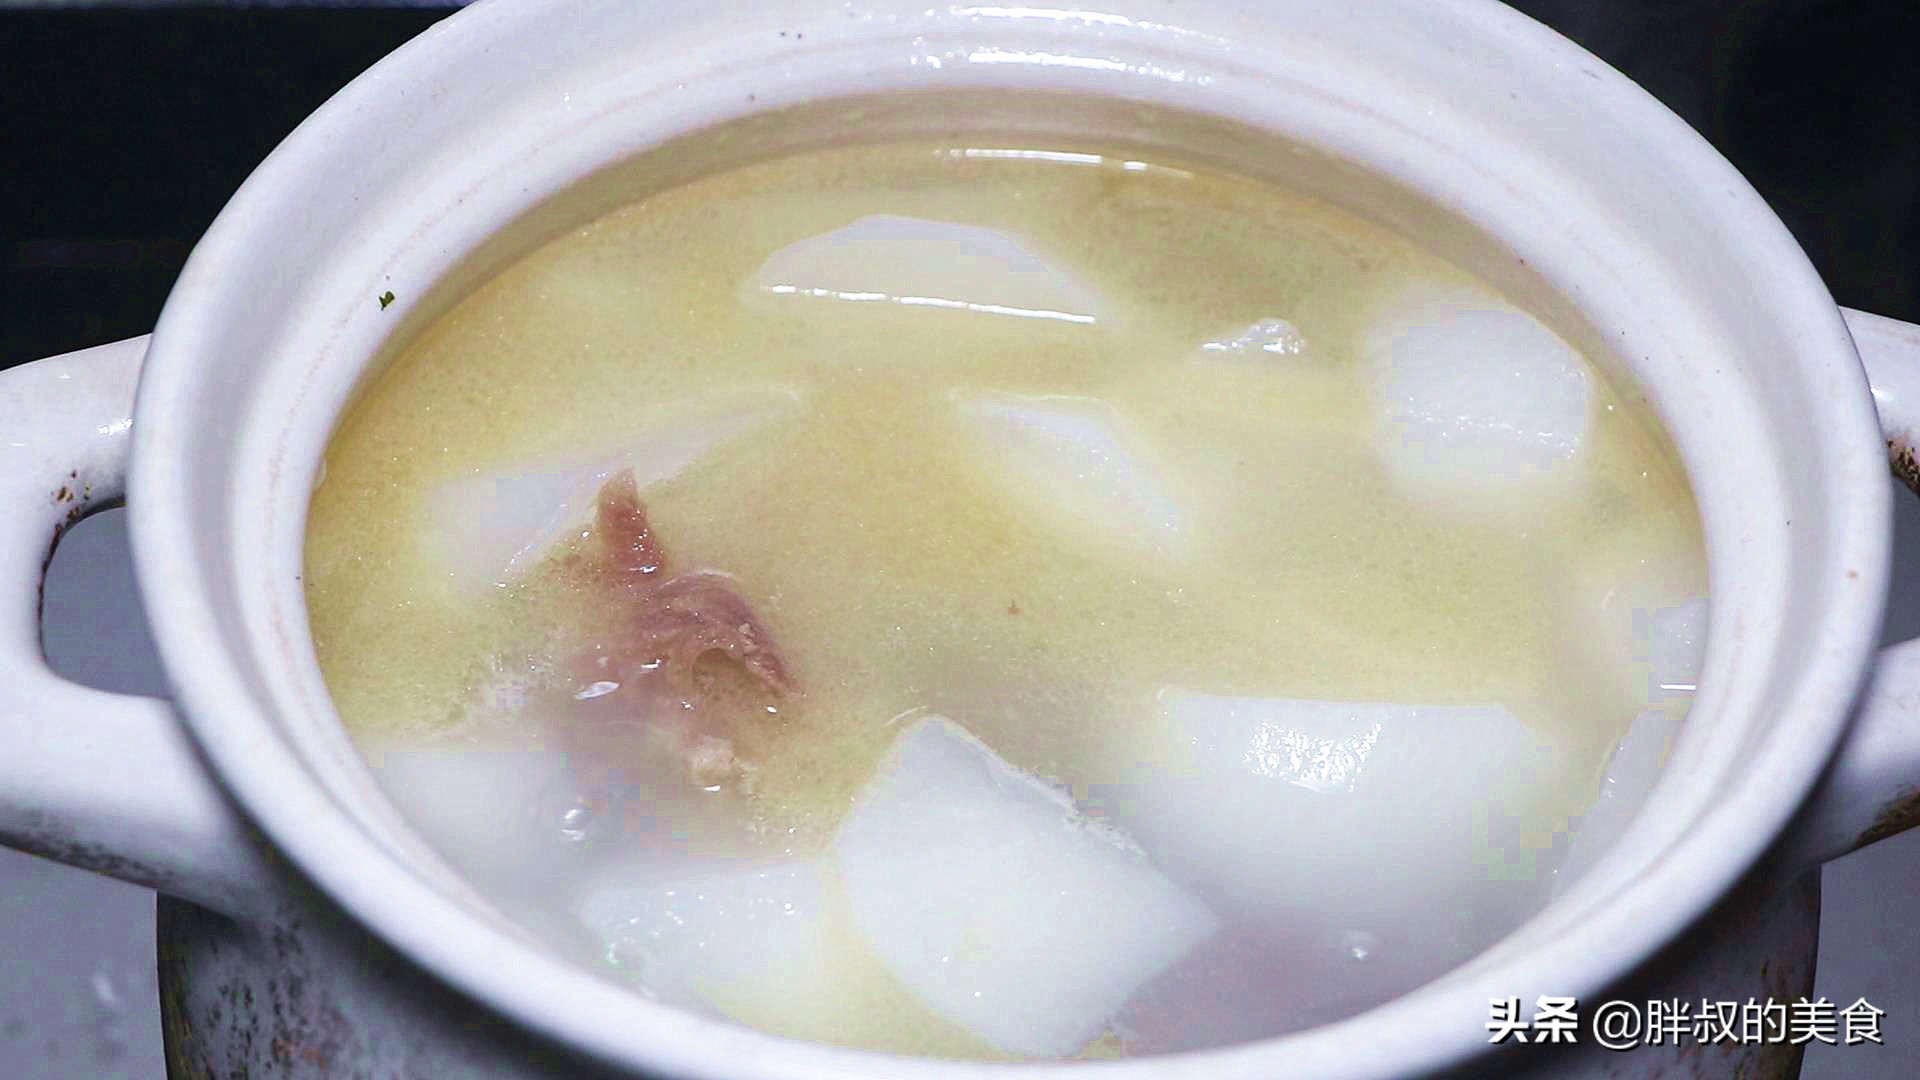 这才是牛骨汤的正确做法，汤汁浓白有诀窍，鲜甜营养又补钙，真香